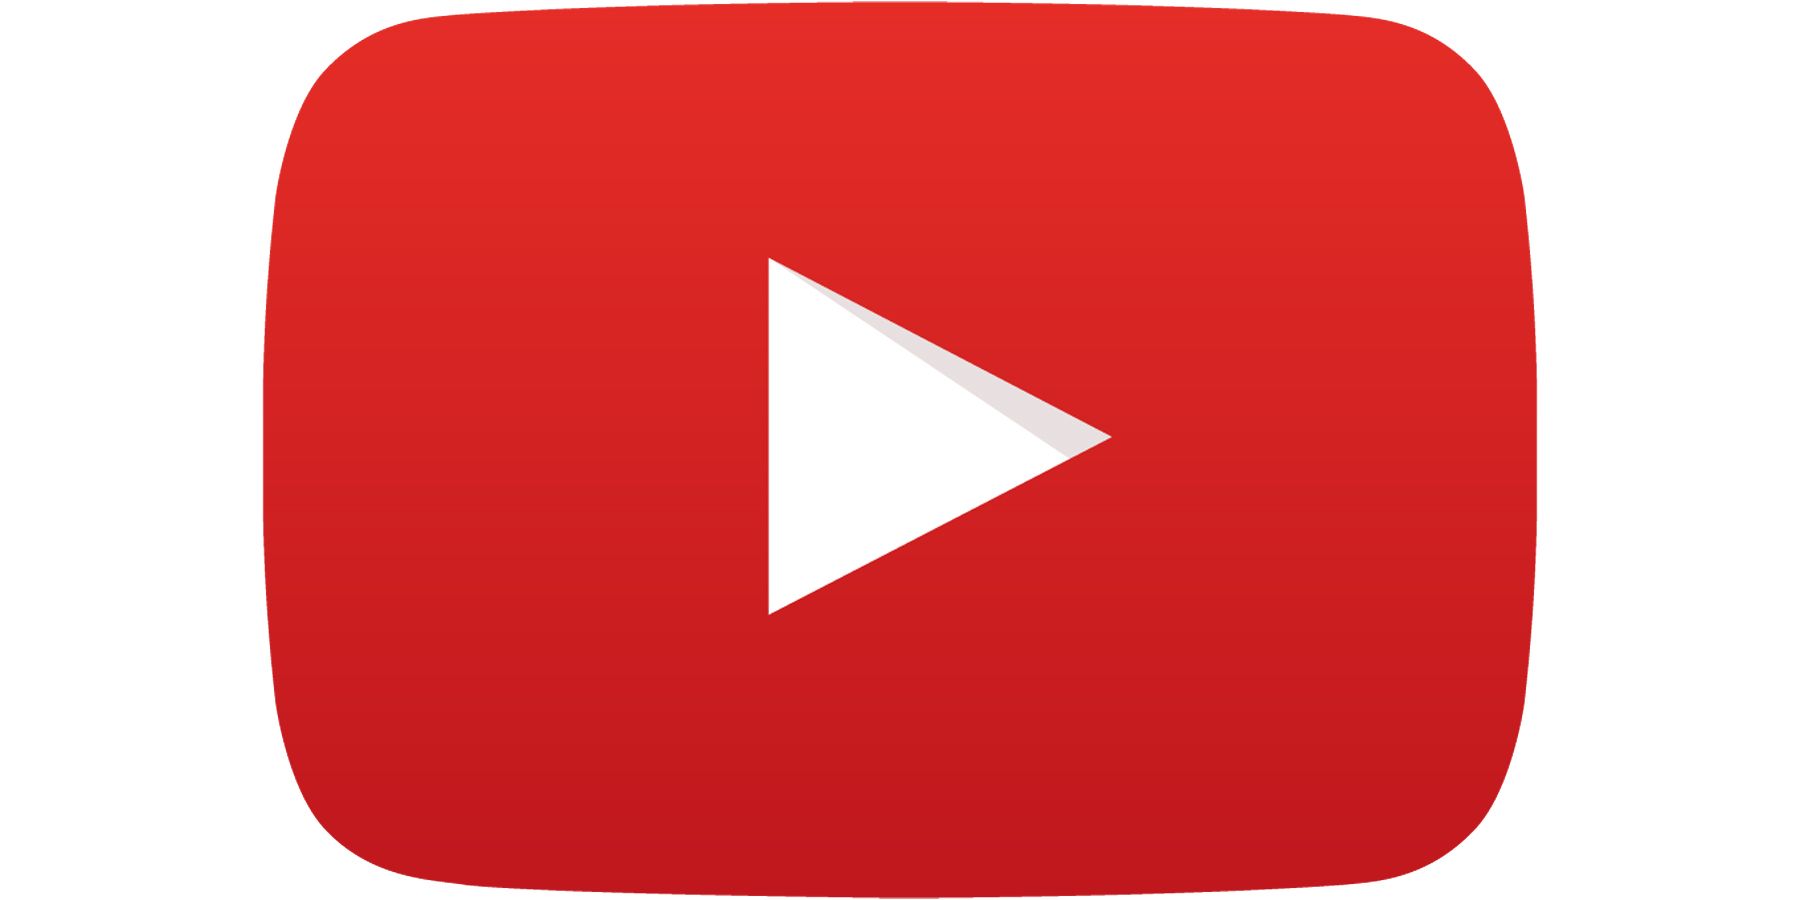 YouTube play button logo